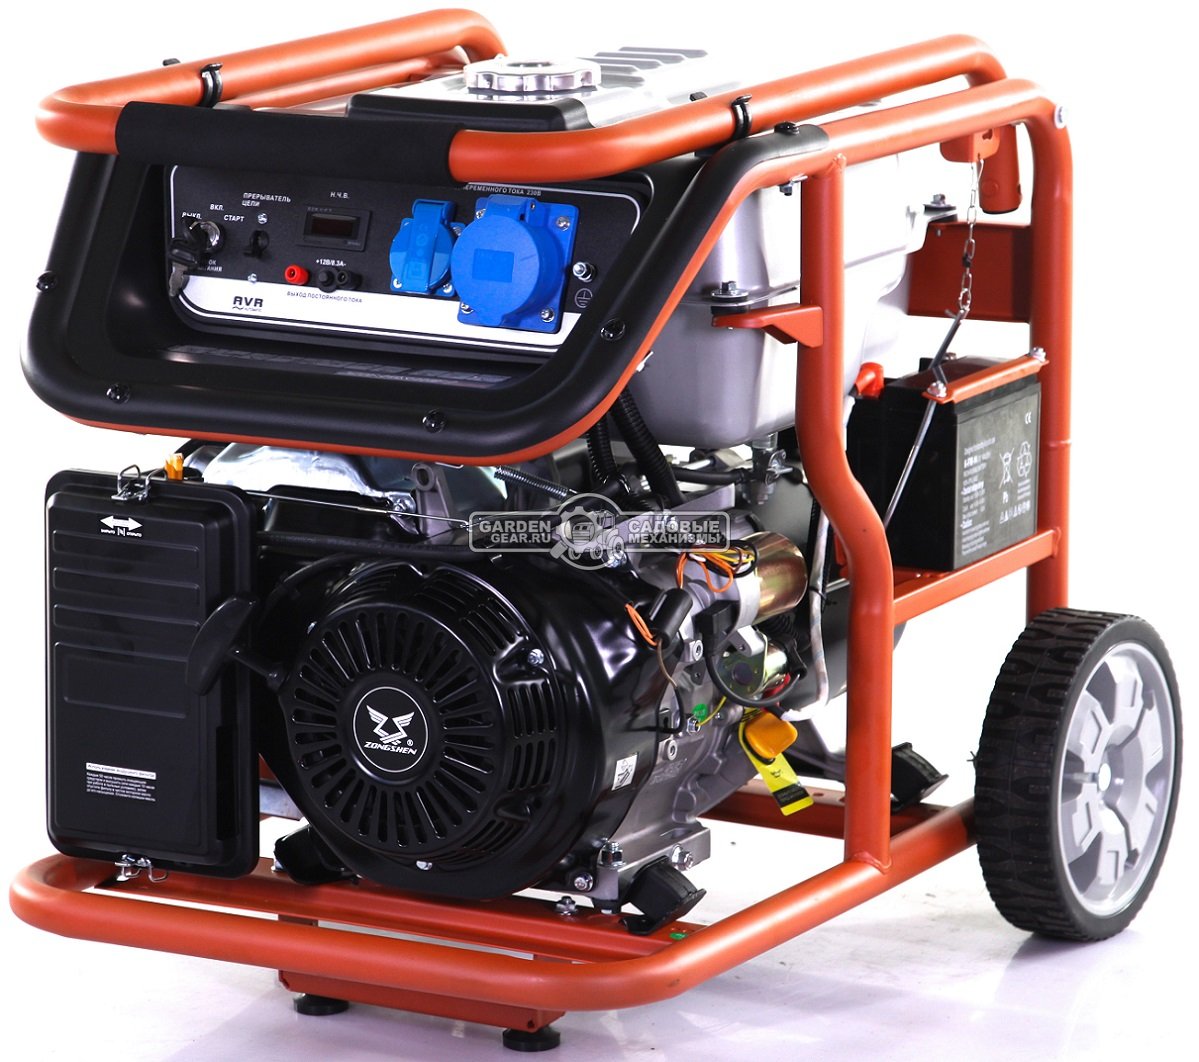 Бензиновый генератор Zongshen Premium KB 7000 E (PRC, 420 см3, 6.0/6.5 кВт, 32 л, электростарт, колеса, 90 кг)